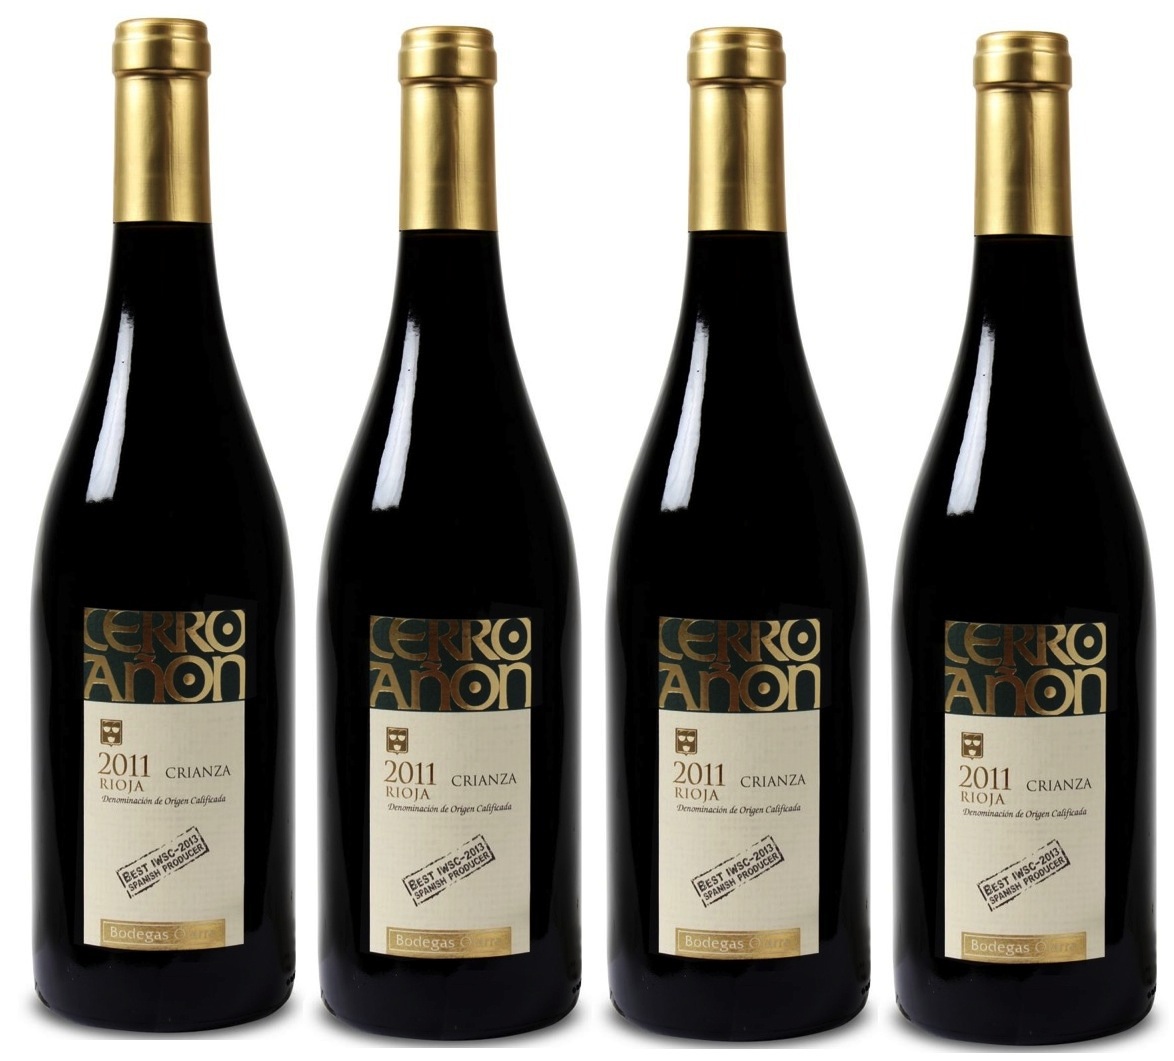 [WEINVORTEIL] Goldprämierter Riojas – 12 Flaschen Bodegas Olarra ‘Cerro Añon’ – Rioja DOCa Crianza für zusammen nur 51,38 Euro inkl. Lieferung